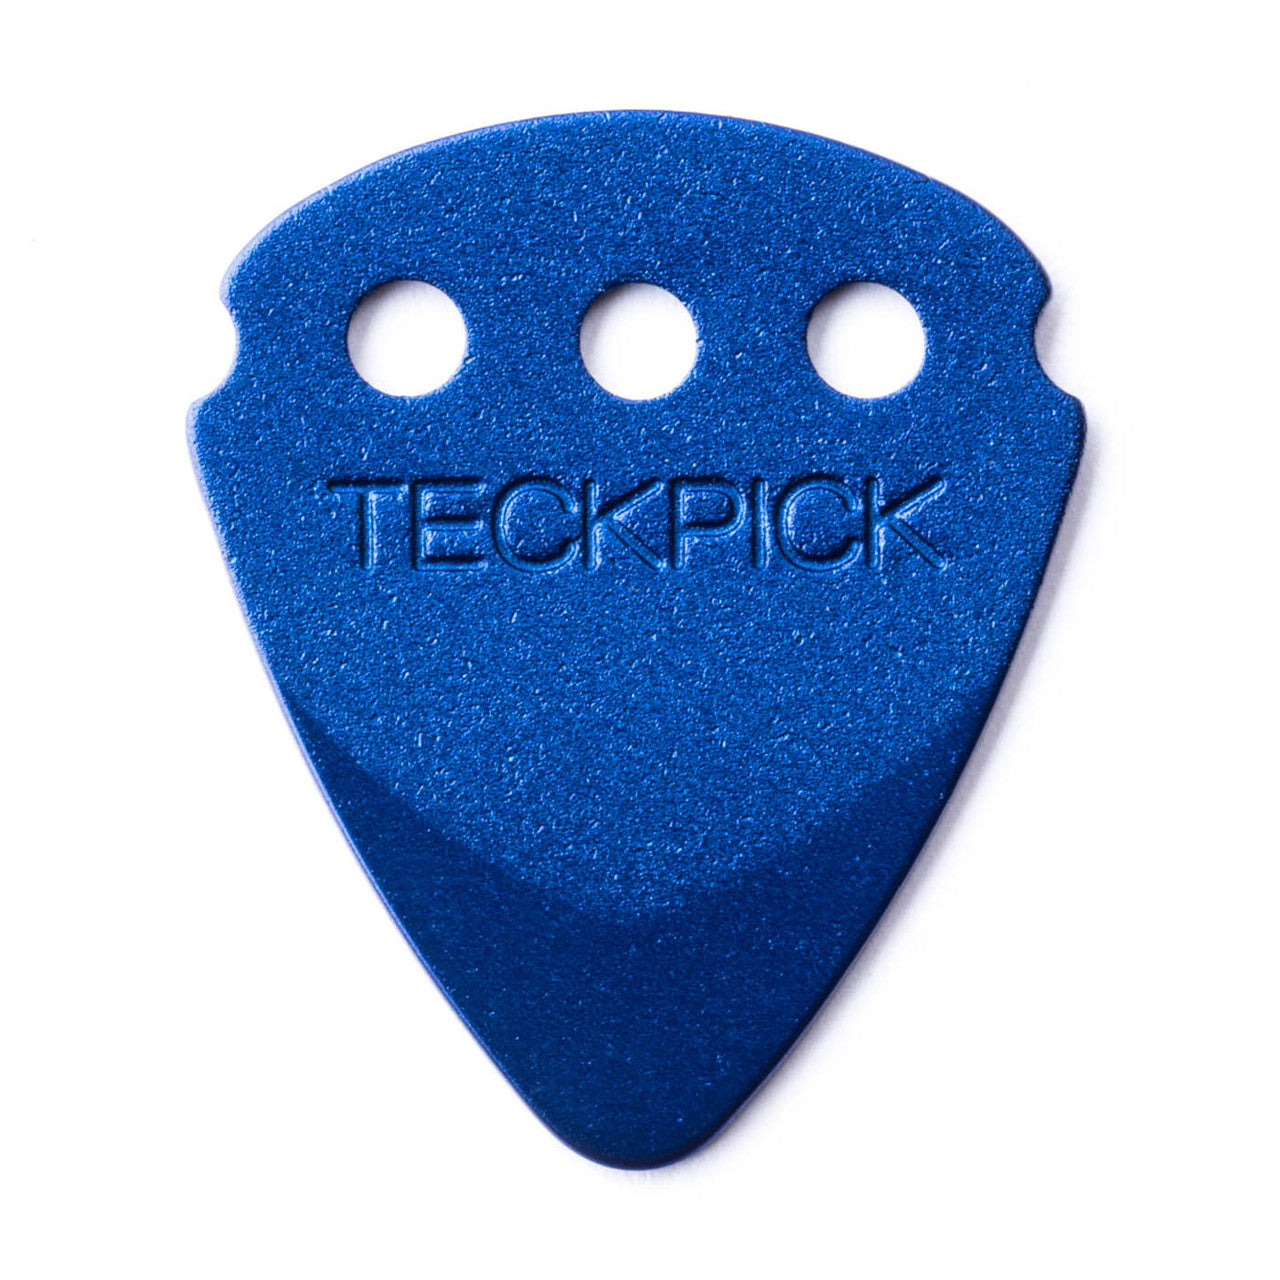 Dunlop Teckpick® Standard Blue Aluminum